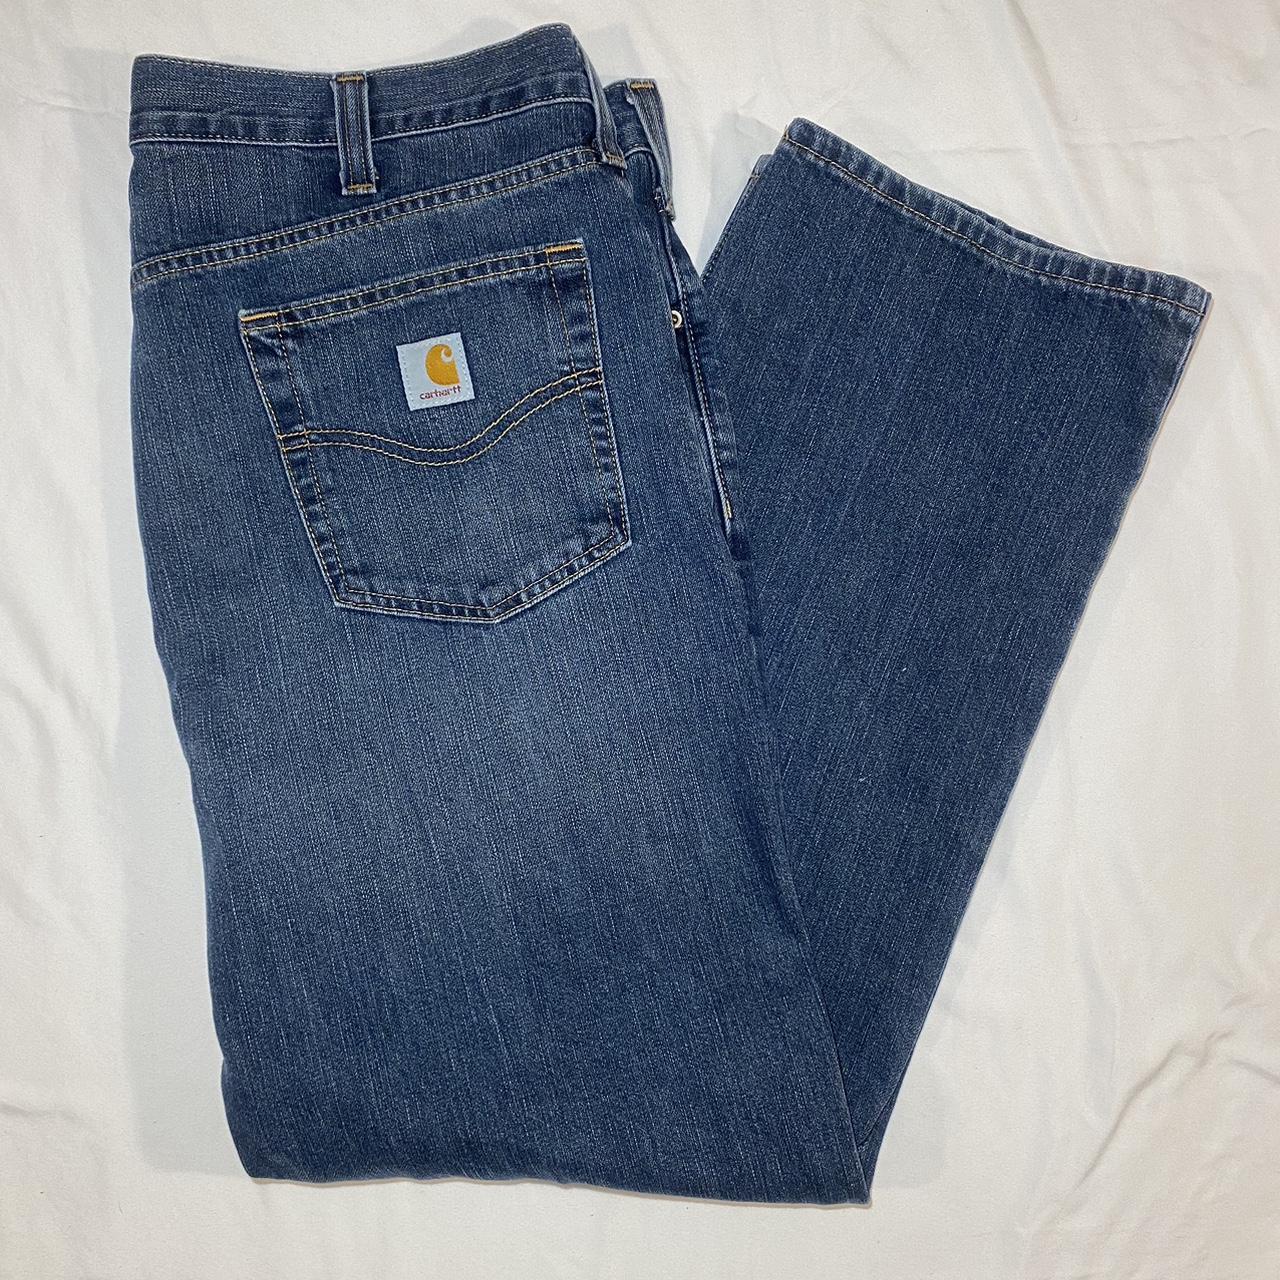 Carhartt Baggy Jeans Size 38 waist 30... - Depop